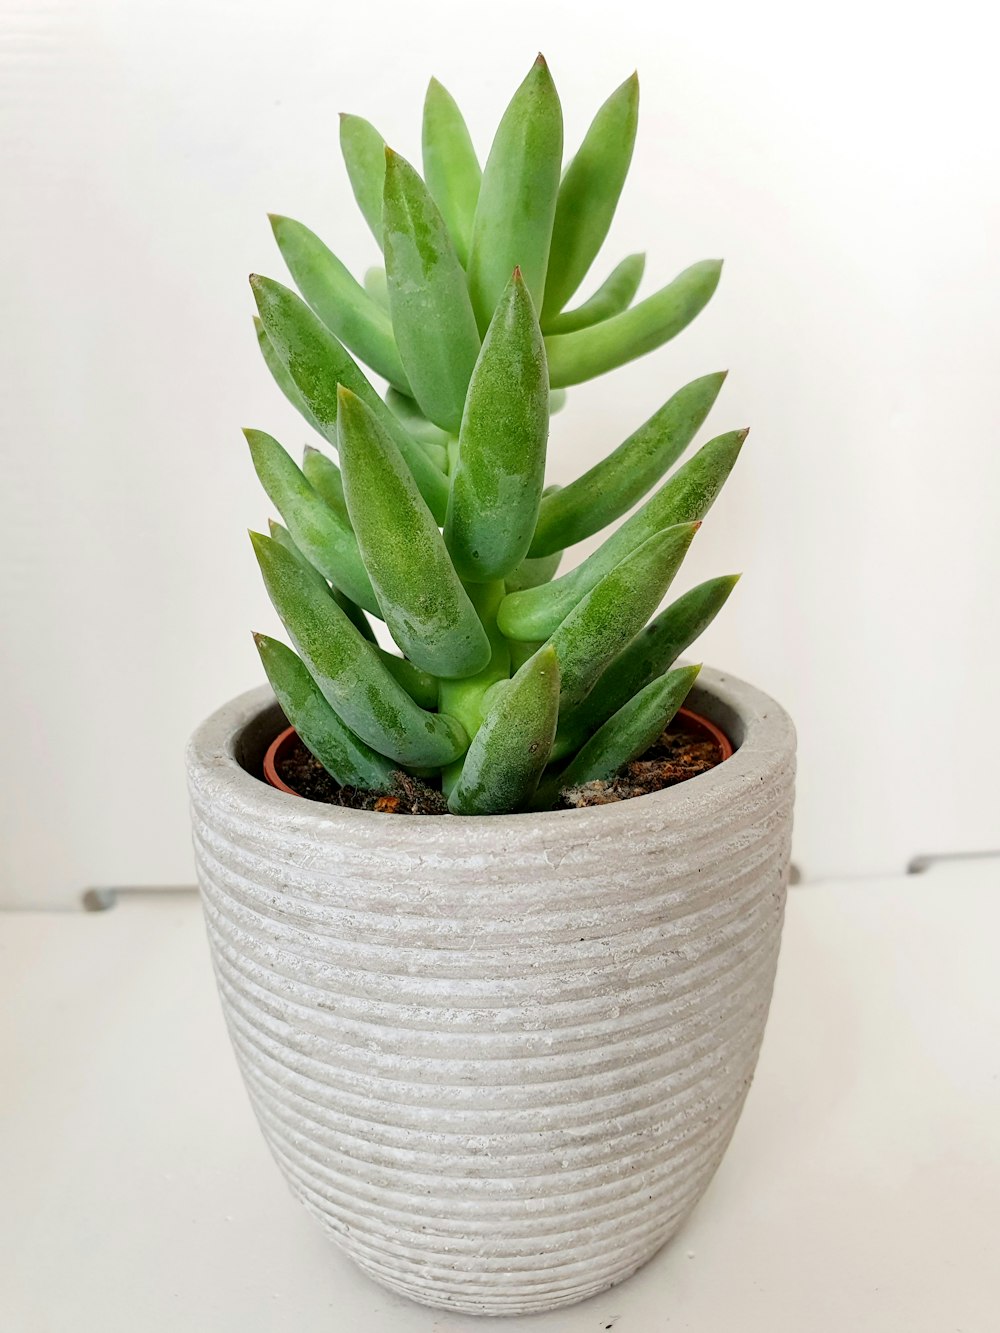 green aloe vera plant in white ceramic pot